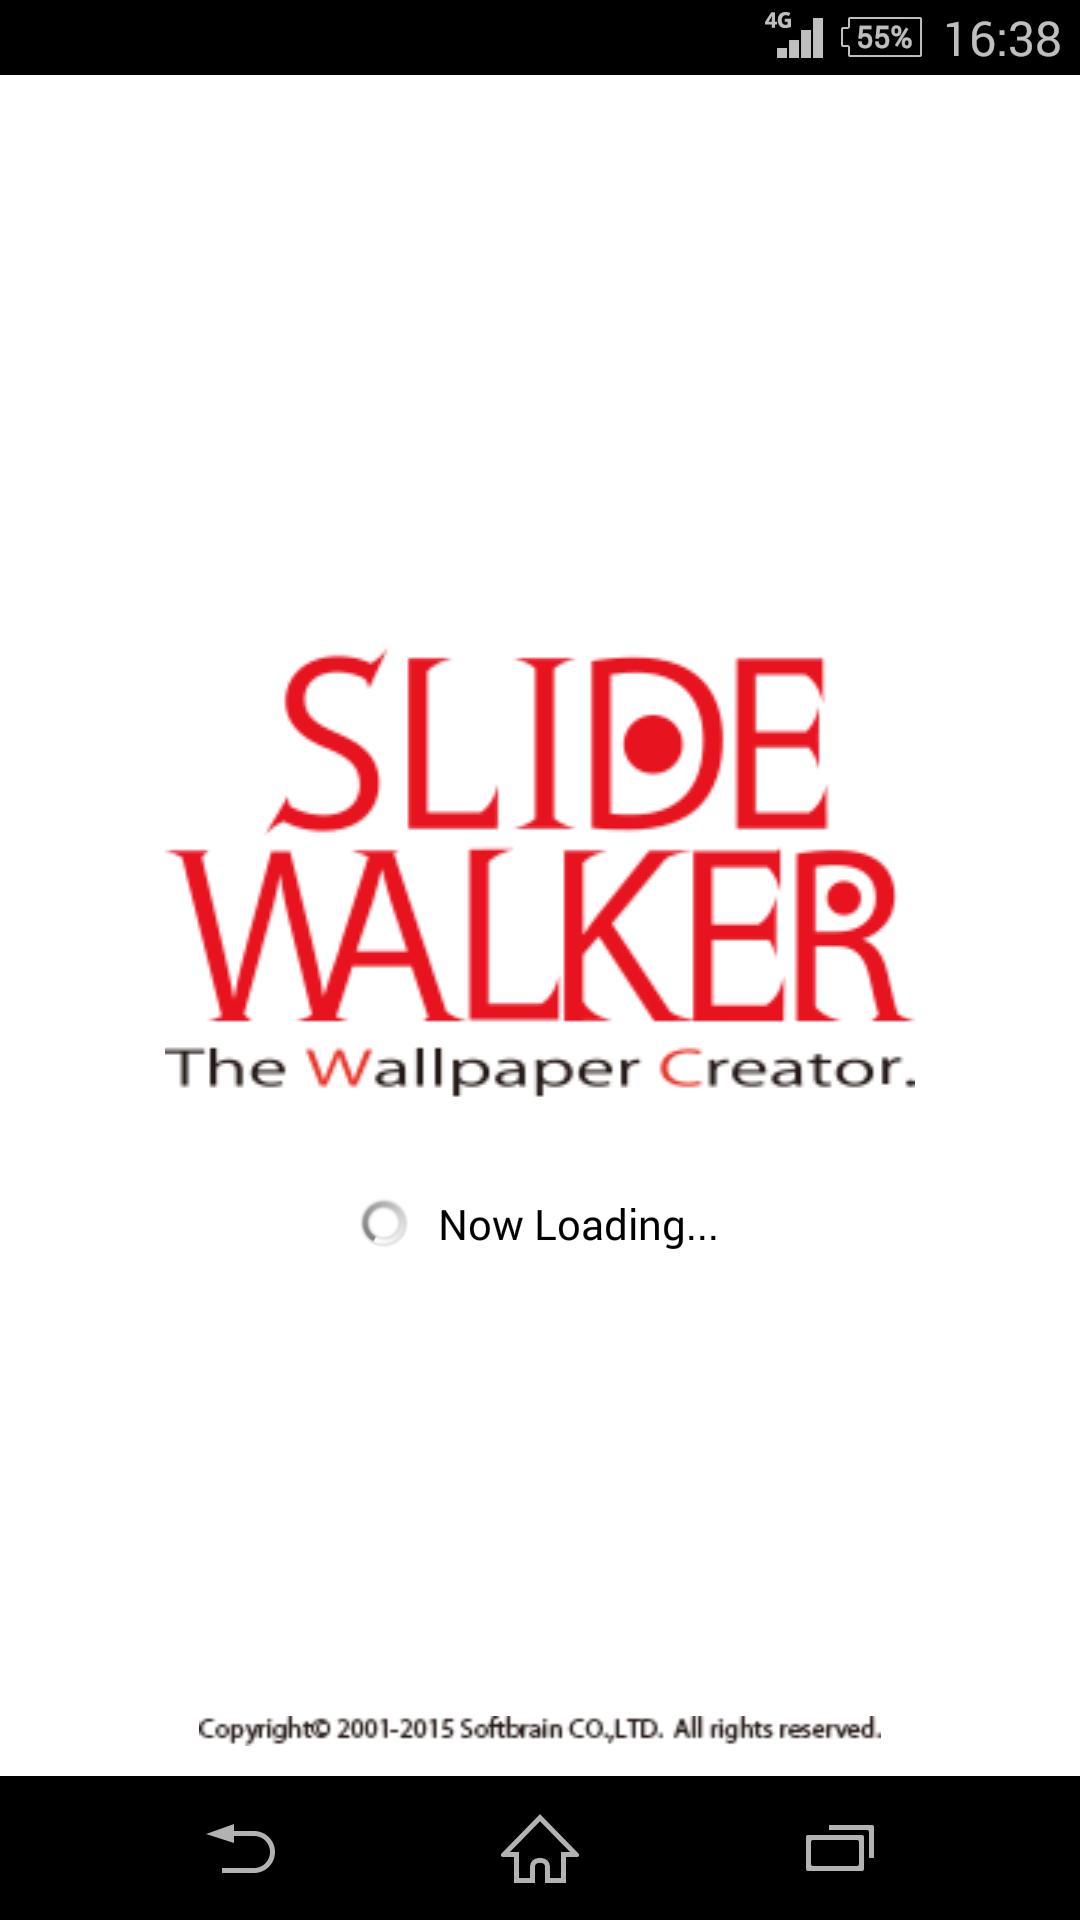 Slidewalker ライブ壁紙作成アプリ For Android Apk Download